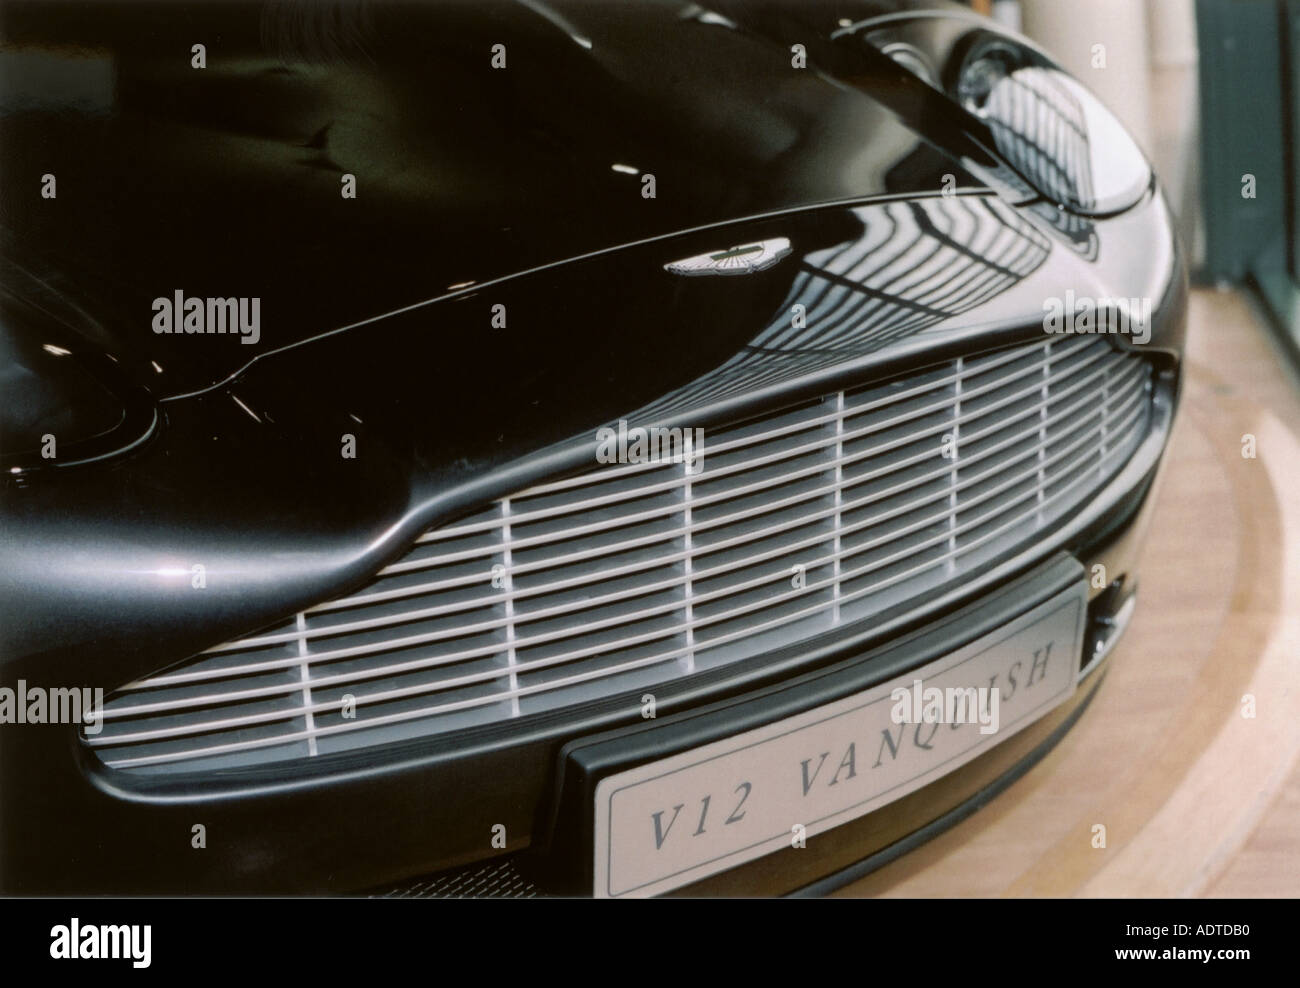 Cluj-Napoca, Cluj/Rumänien-01.31.2020-Ford Mondeo MK5 Sport Edition mit  dynamischen LED-Scheinwerfern, Sport Front Bumper,  18-Zoll-Leichtmetallfelgen, Aston Martin Stockfotografie - Alamy